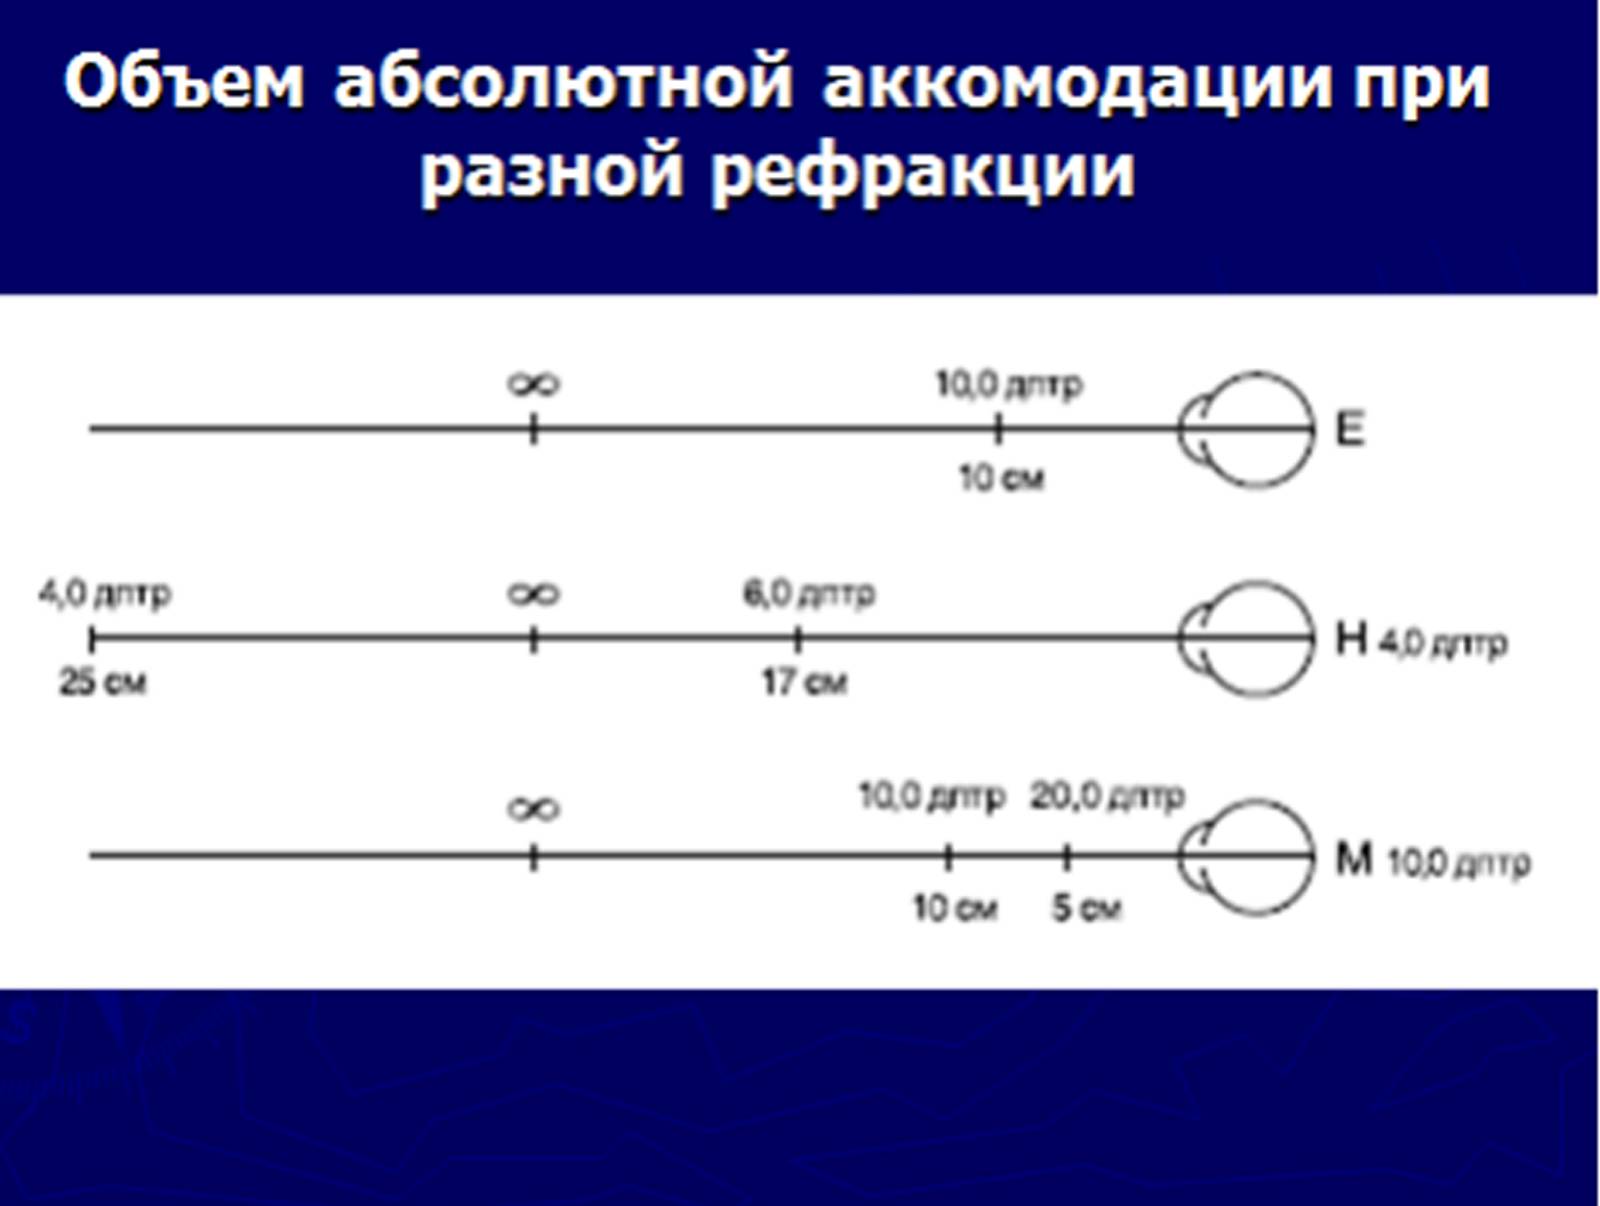 Что такое объем аккомодации и как его измеряют oculistic.ru
что такое объем аккомодации и как его измеряют